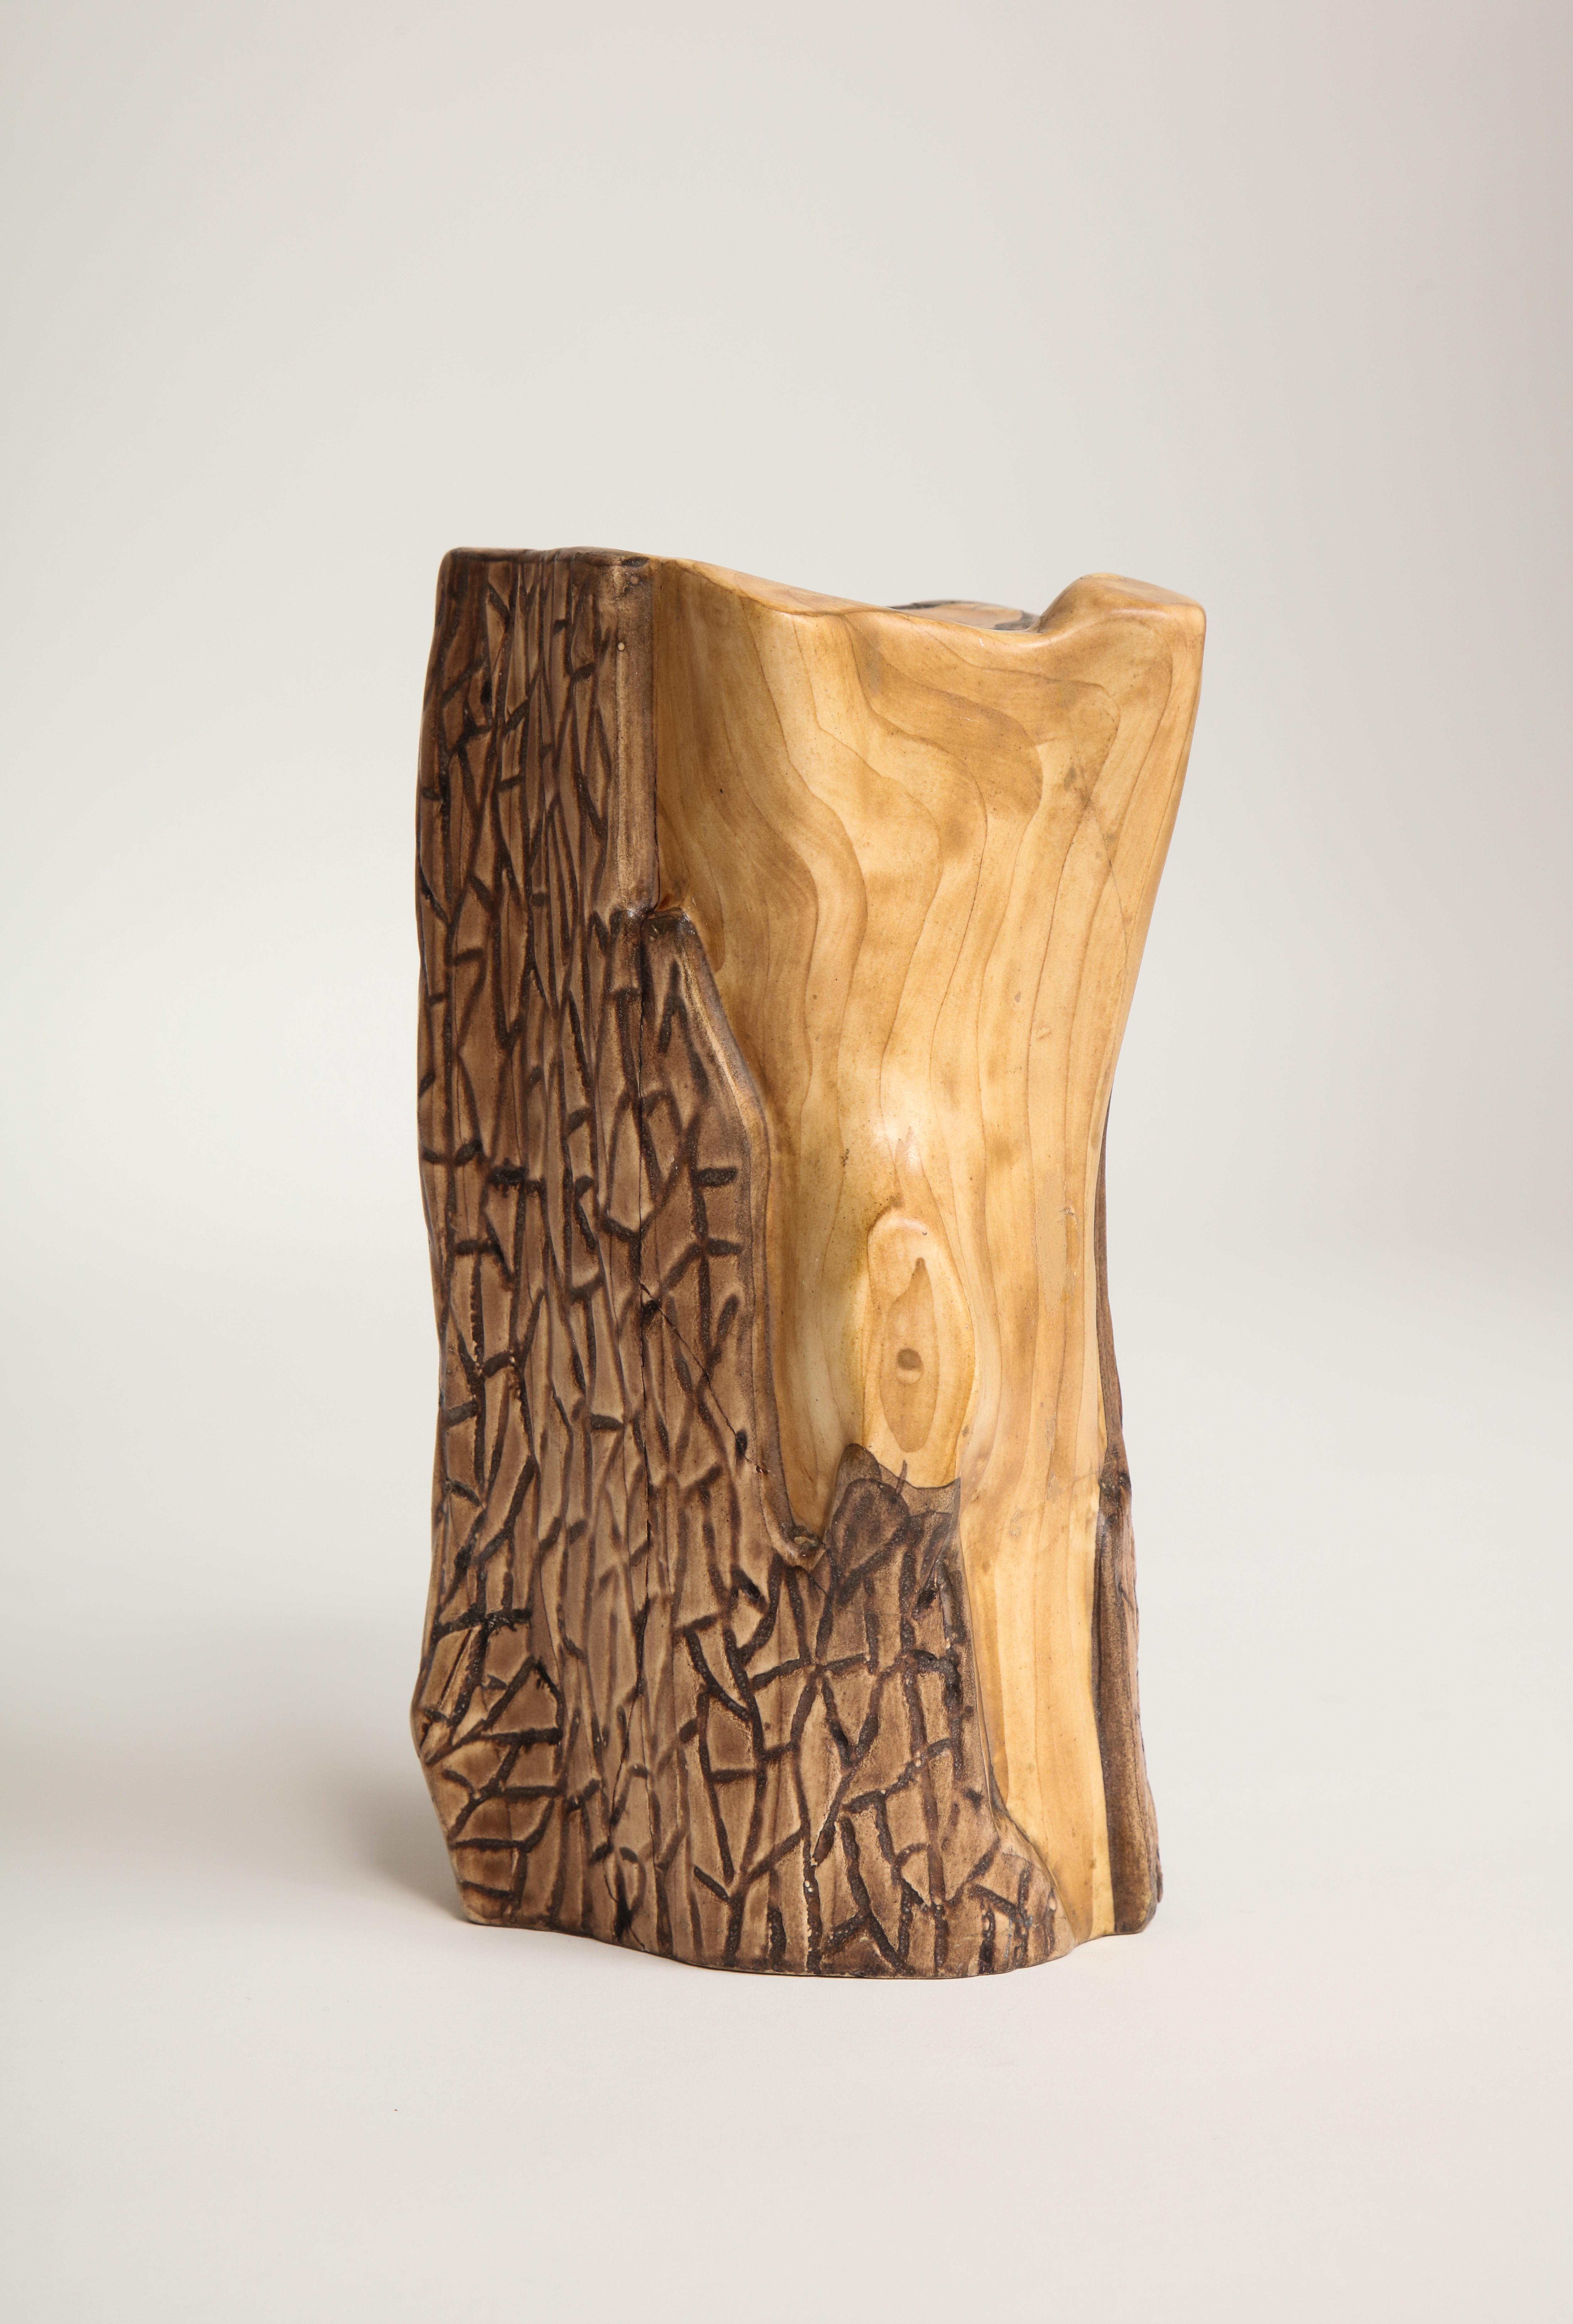 Schönes, beliebtes Midcentury-Design von Grandjean Jourdan.
Die Serie Faux Bois wurde so lackiert, dass sie wie echtes Holz aussieht, mit eingeprägter Vallauris-Marke.

Insgesamt guter, dem Alter entsprechender Zustand. An mehreren Stellen